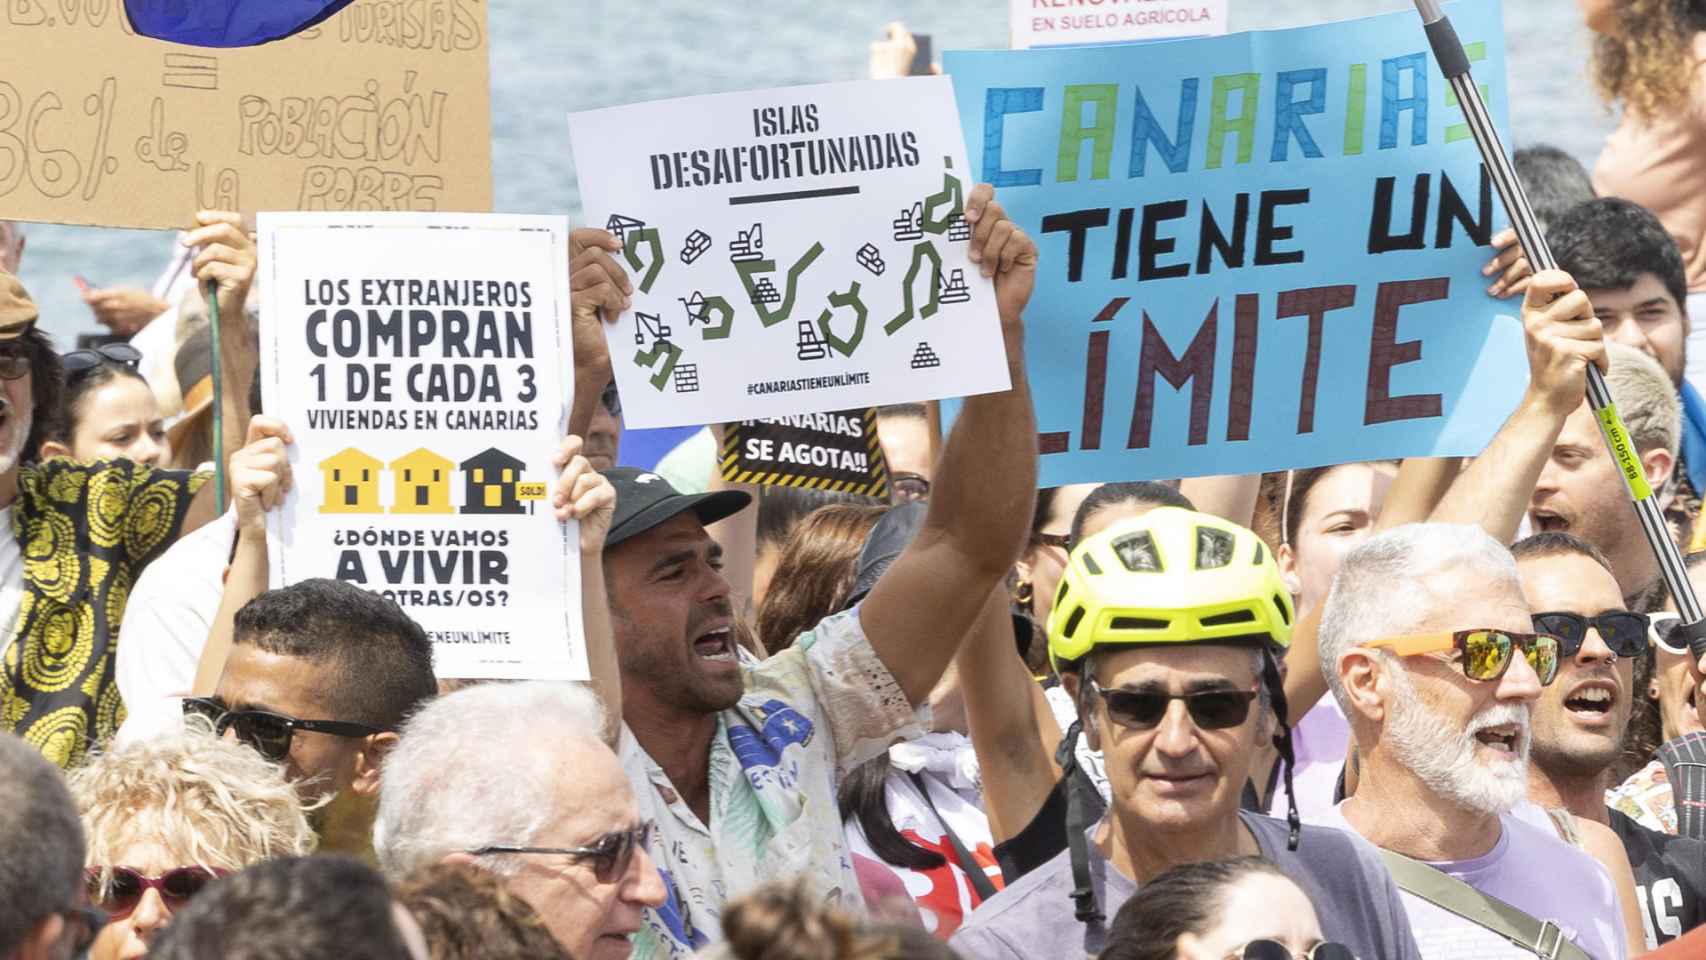  Canarias tiene un límite : miles de isleños protestan contra los problemas del turismo masivo